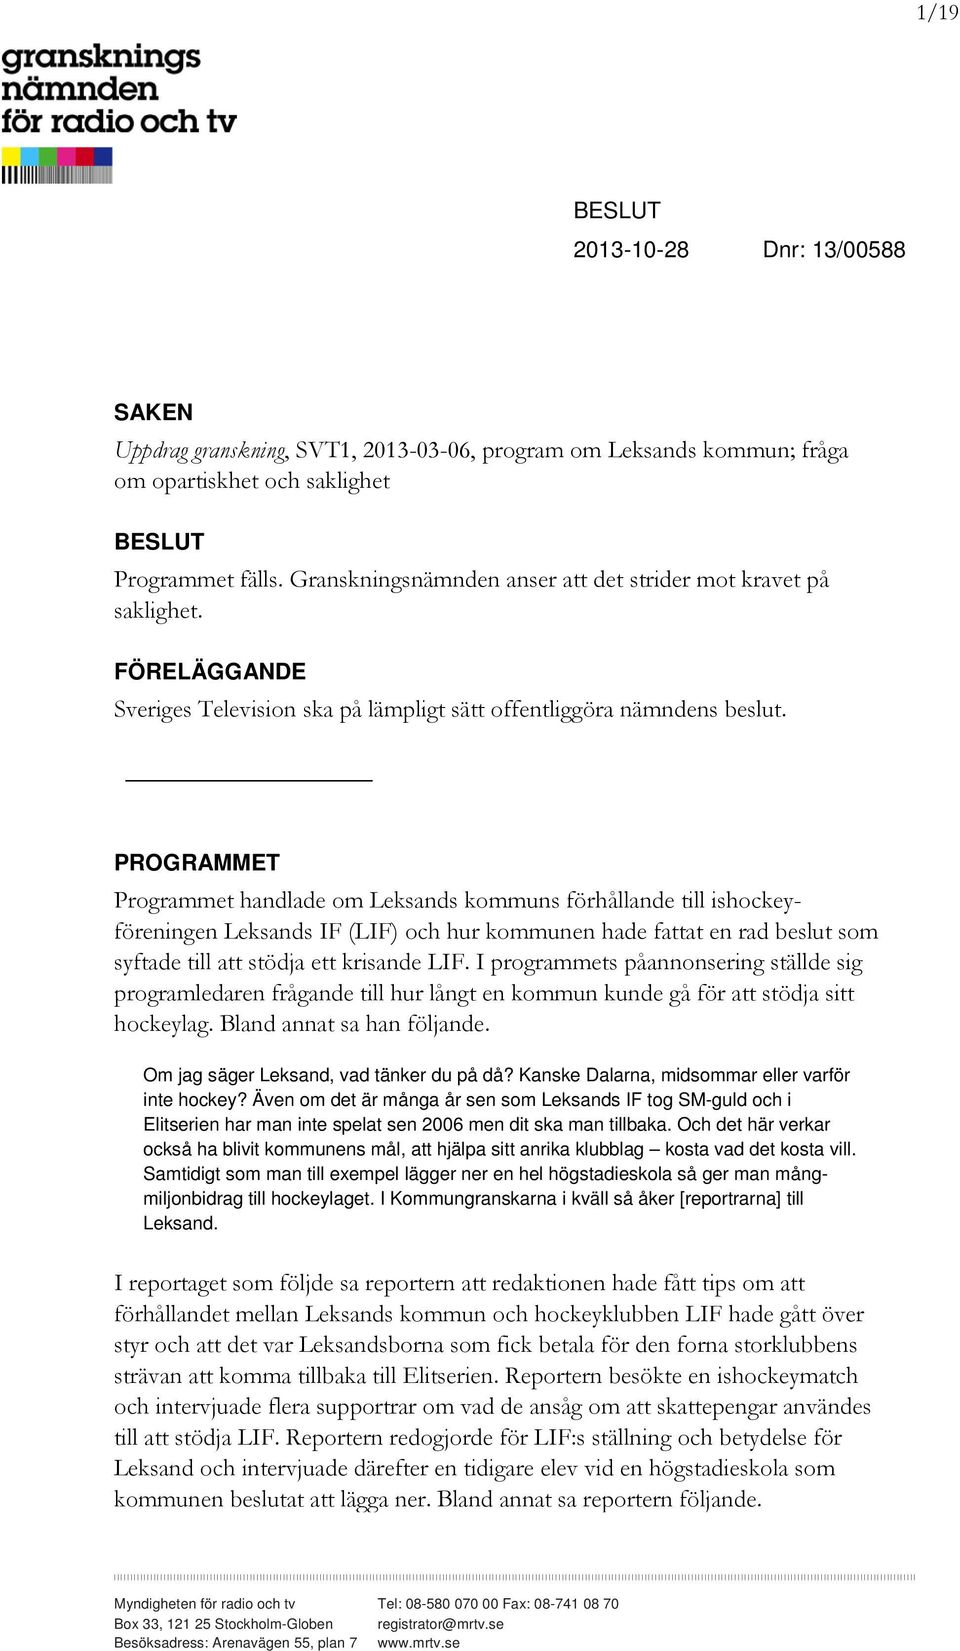 PROGRAMMET Programmet handlade om Leksands kommuns förhållande till ishockeyföreningen Leksands IF (LIF) och hur kommunen hade fattat en rad beslut som syftade till att stödja ett krisande LIF.